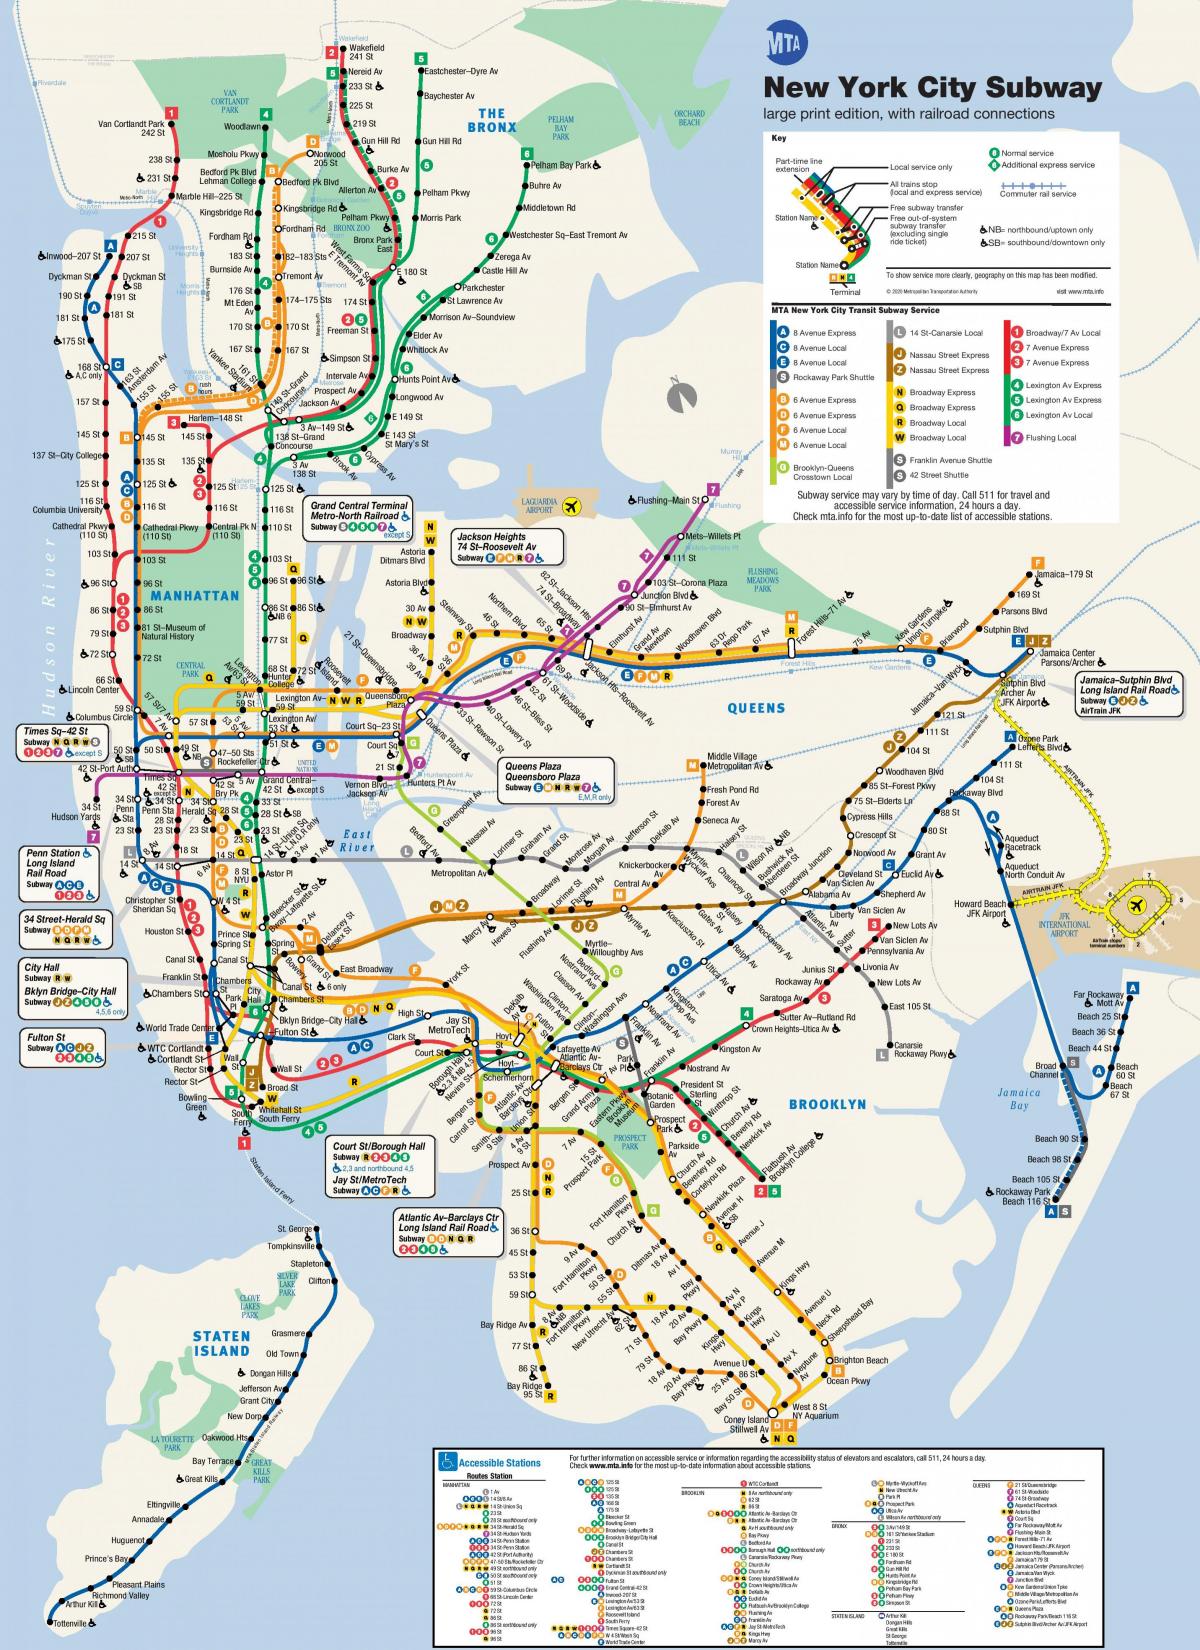 Нью-Йорк MTA карта метро